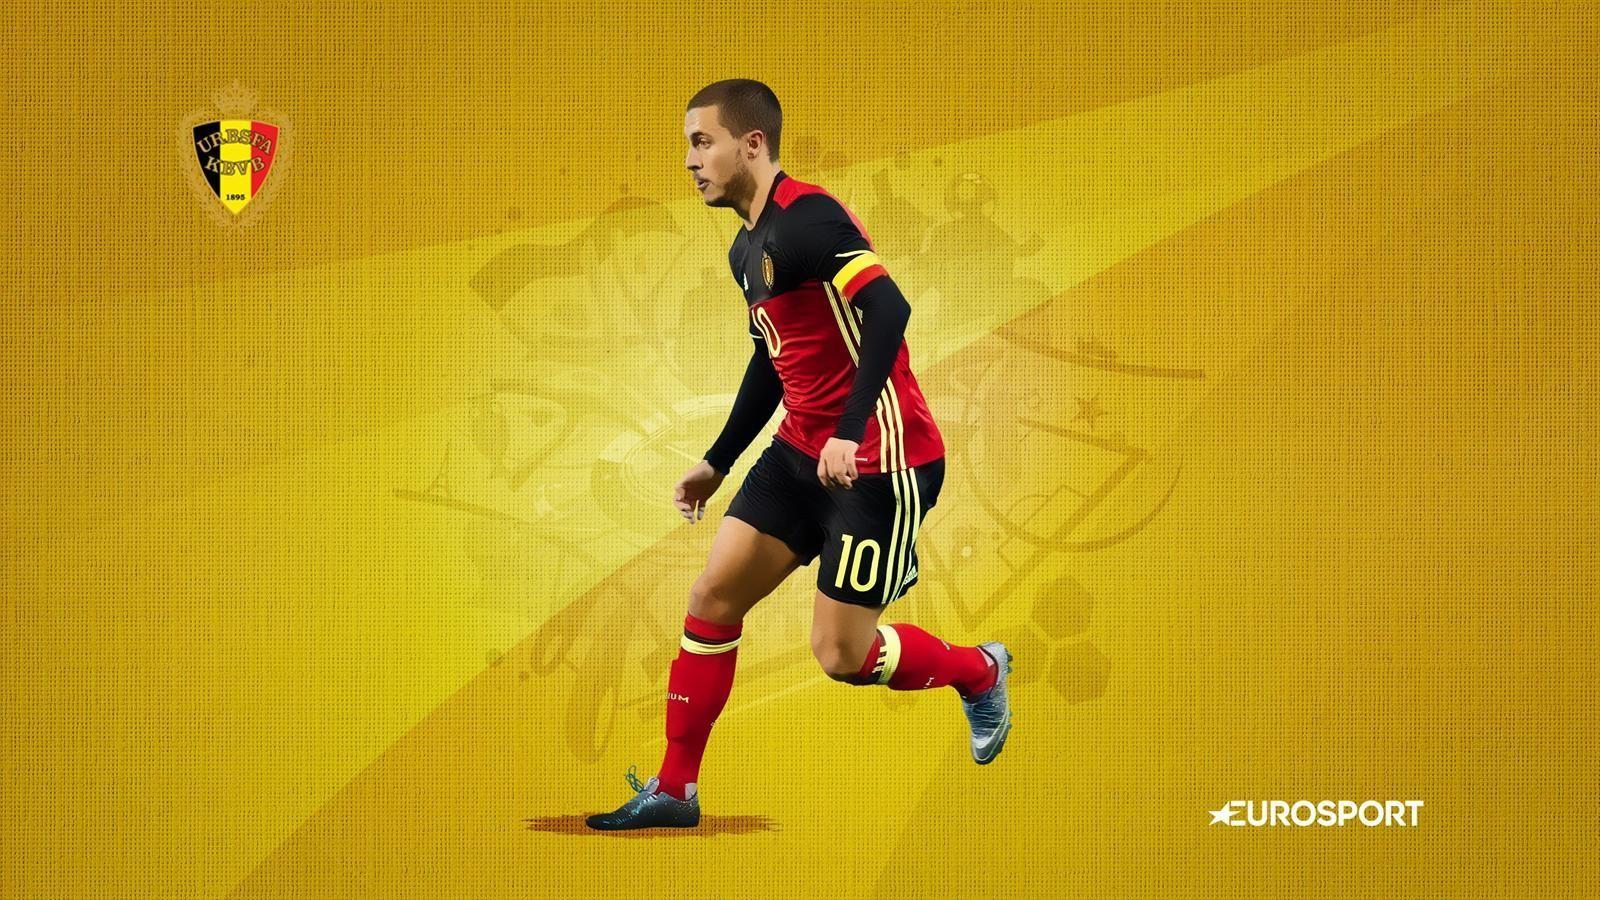 Euro 2016 team profile: Belgium 2016